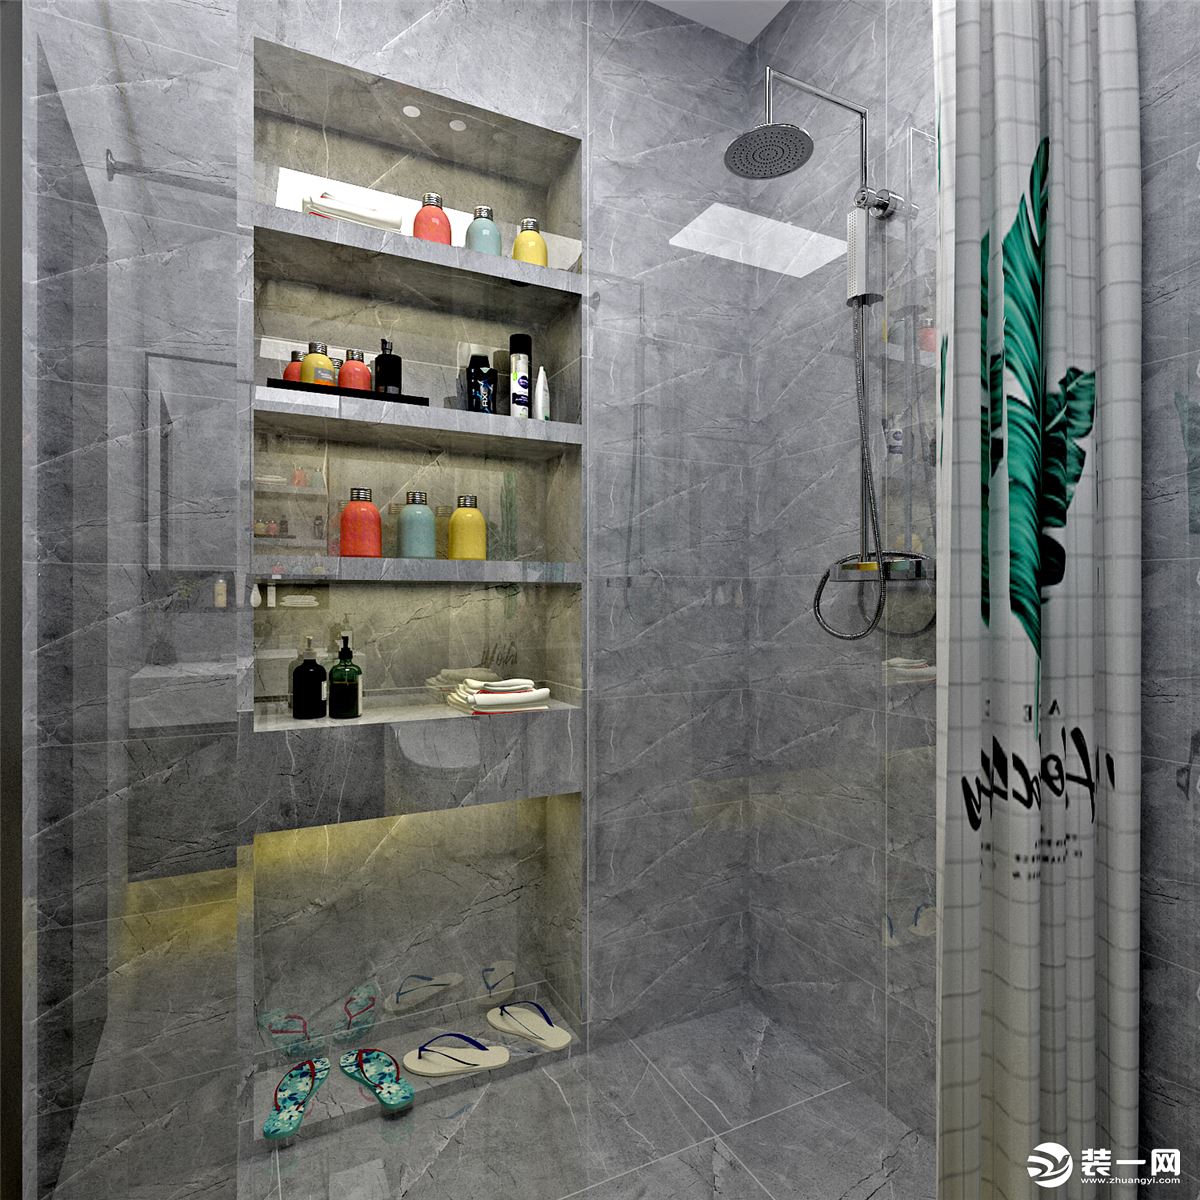 白色淡纹墙砖使卫生间更加明亮，不显压抑，同时在功能设计上也满足更多的利用空间。